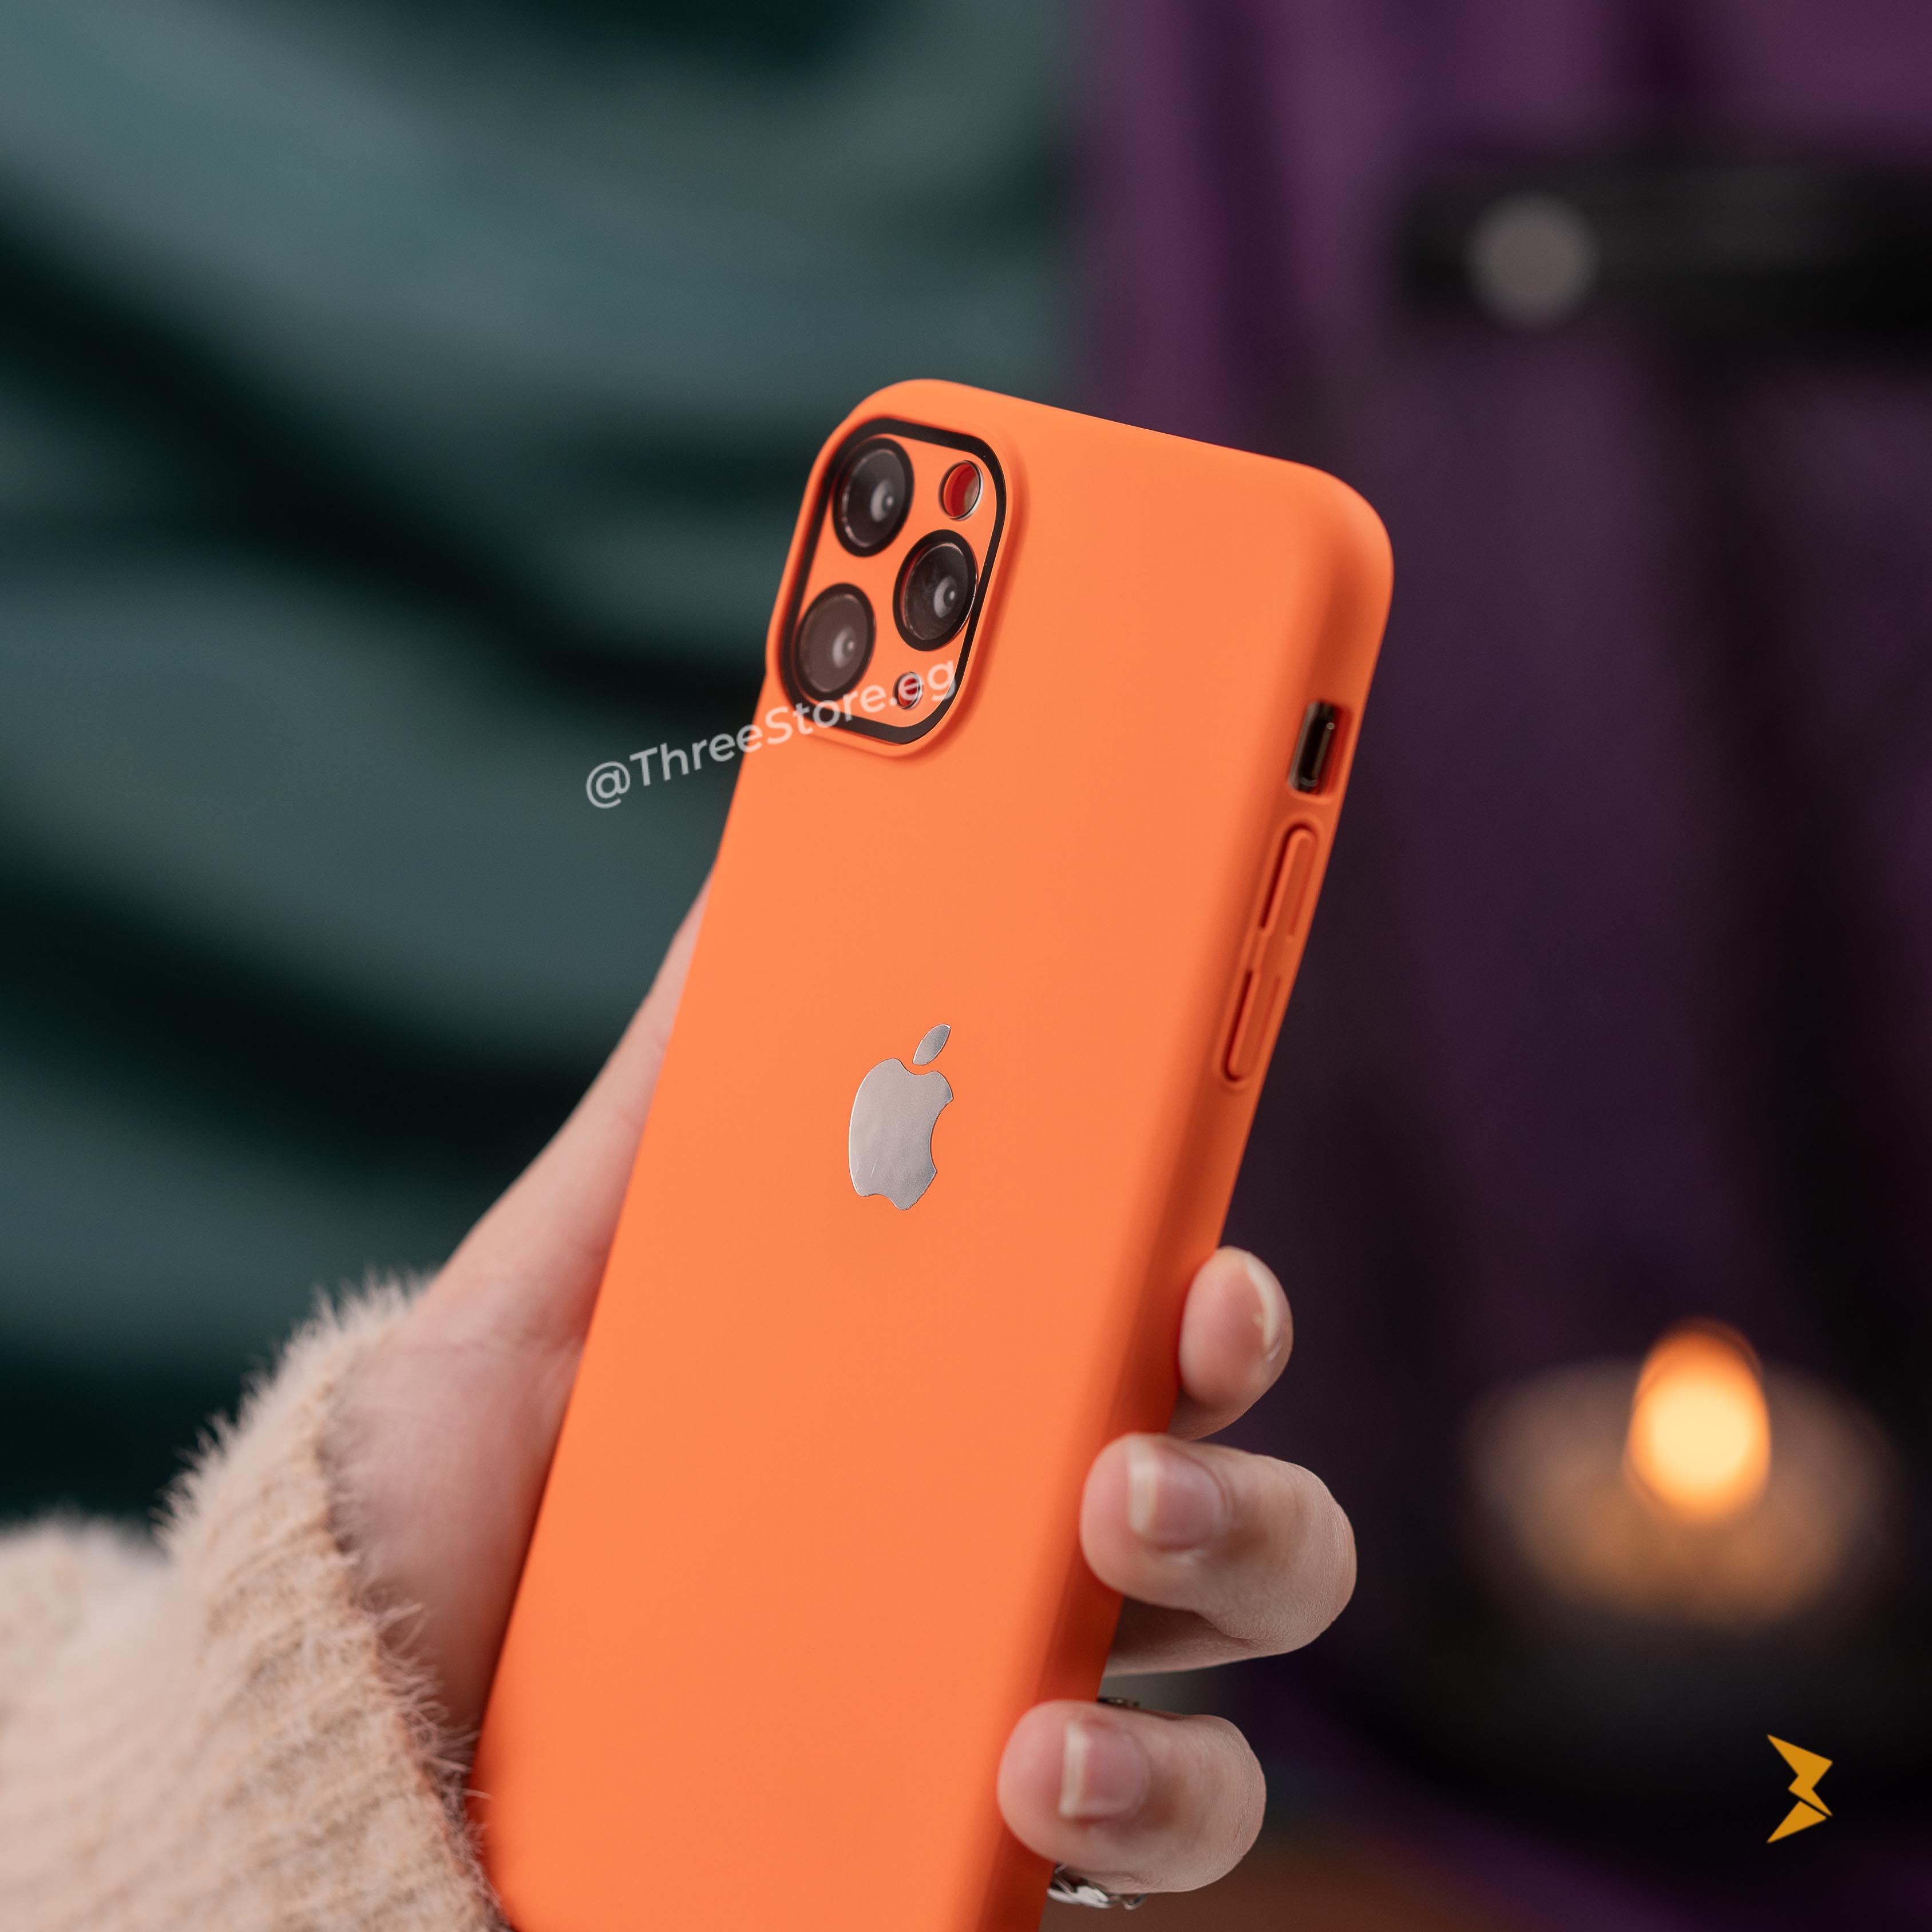 جراب ايفون 11 برو ماكس مصمم ببراعة لتوفير حماية فائقة يأتي باللوان رائعة اللون البرتقالي